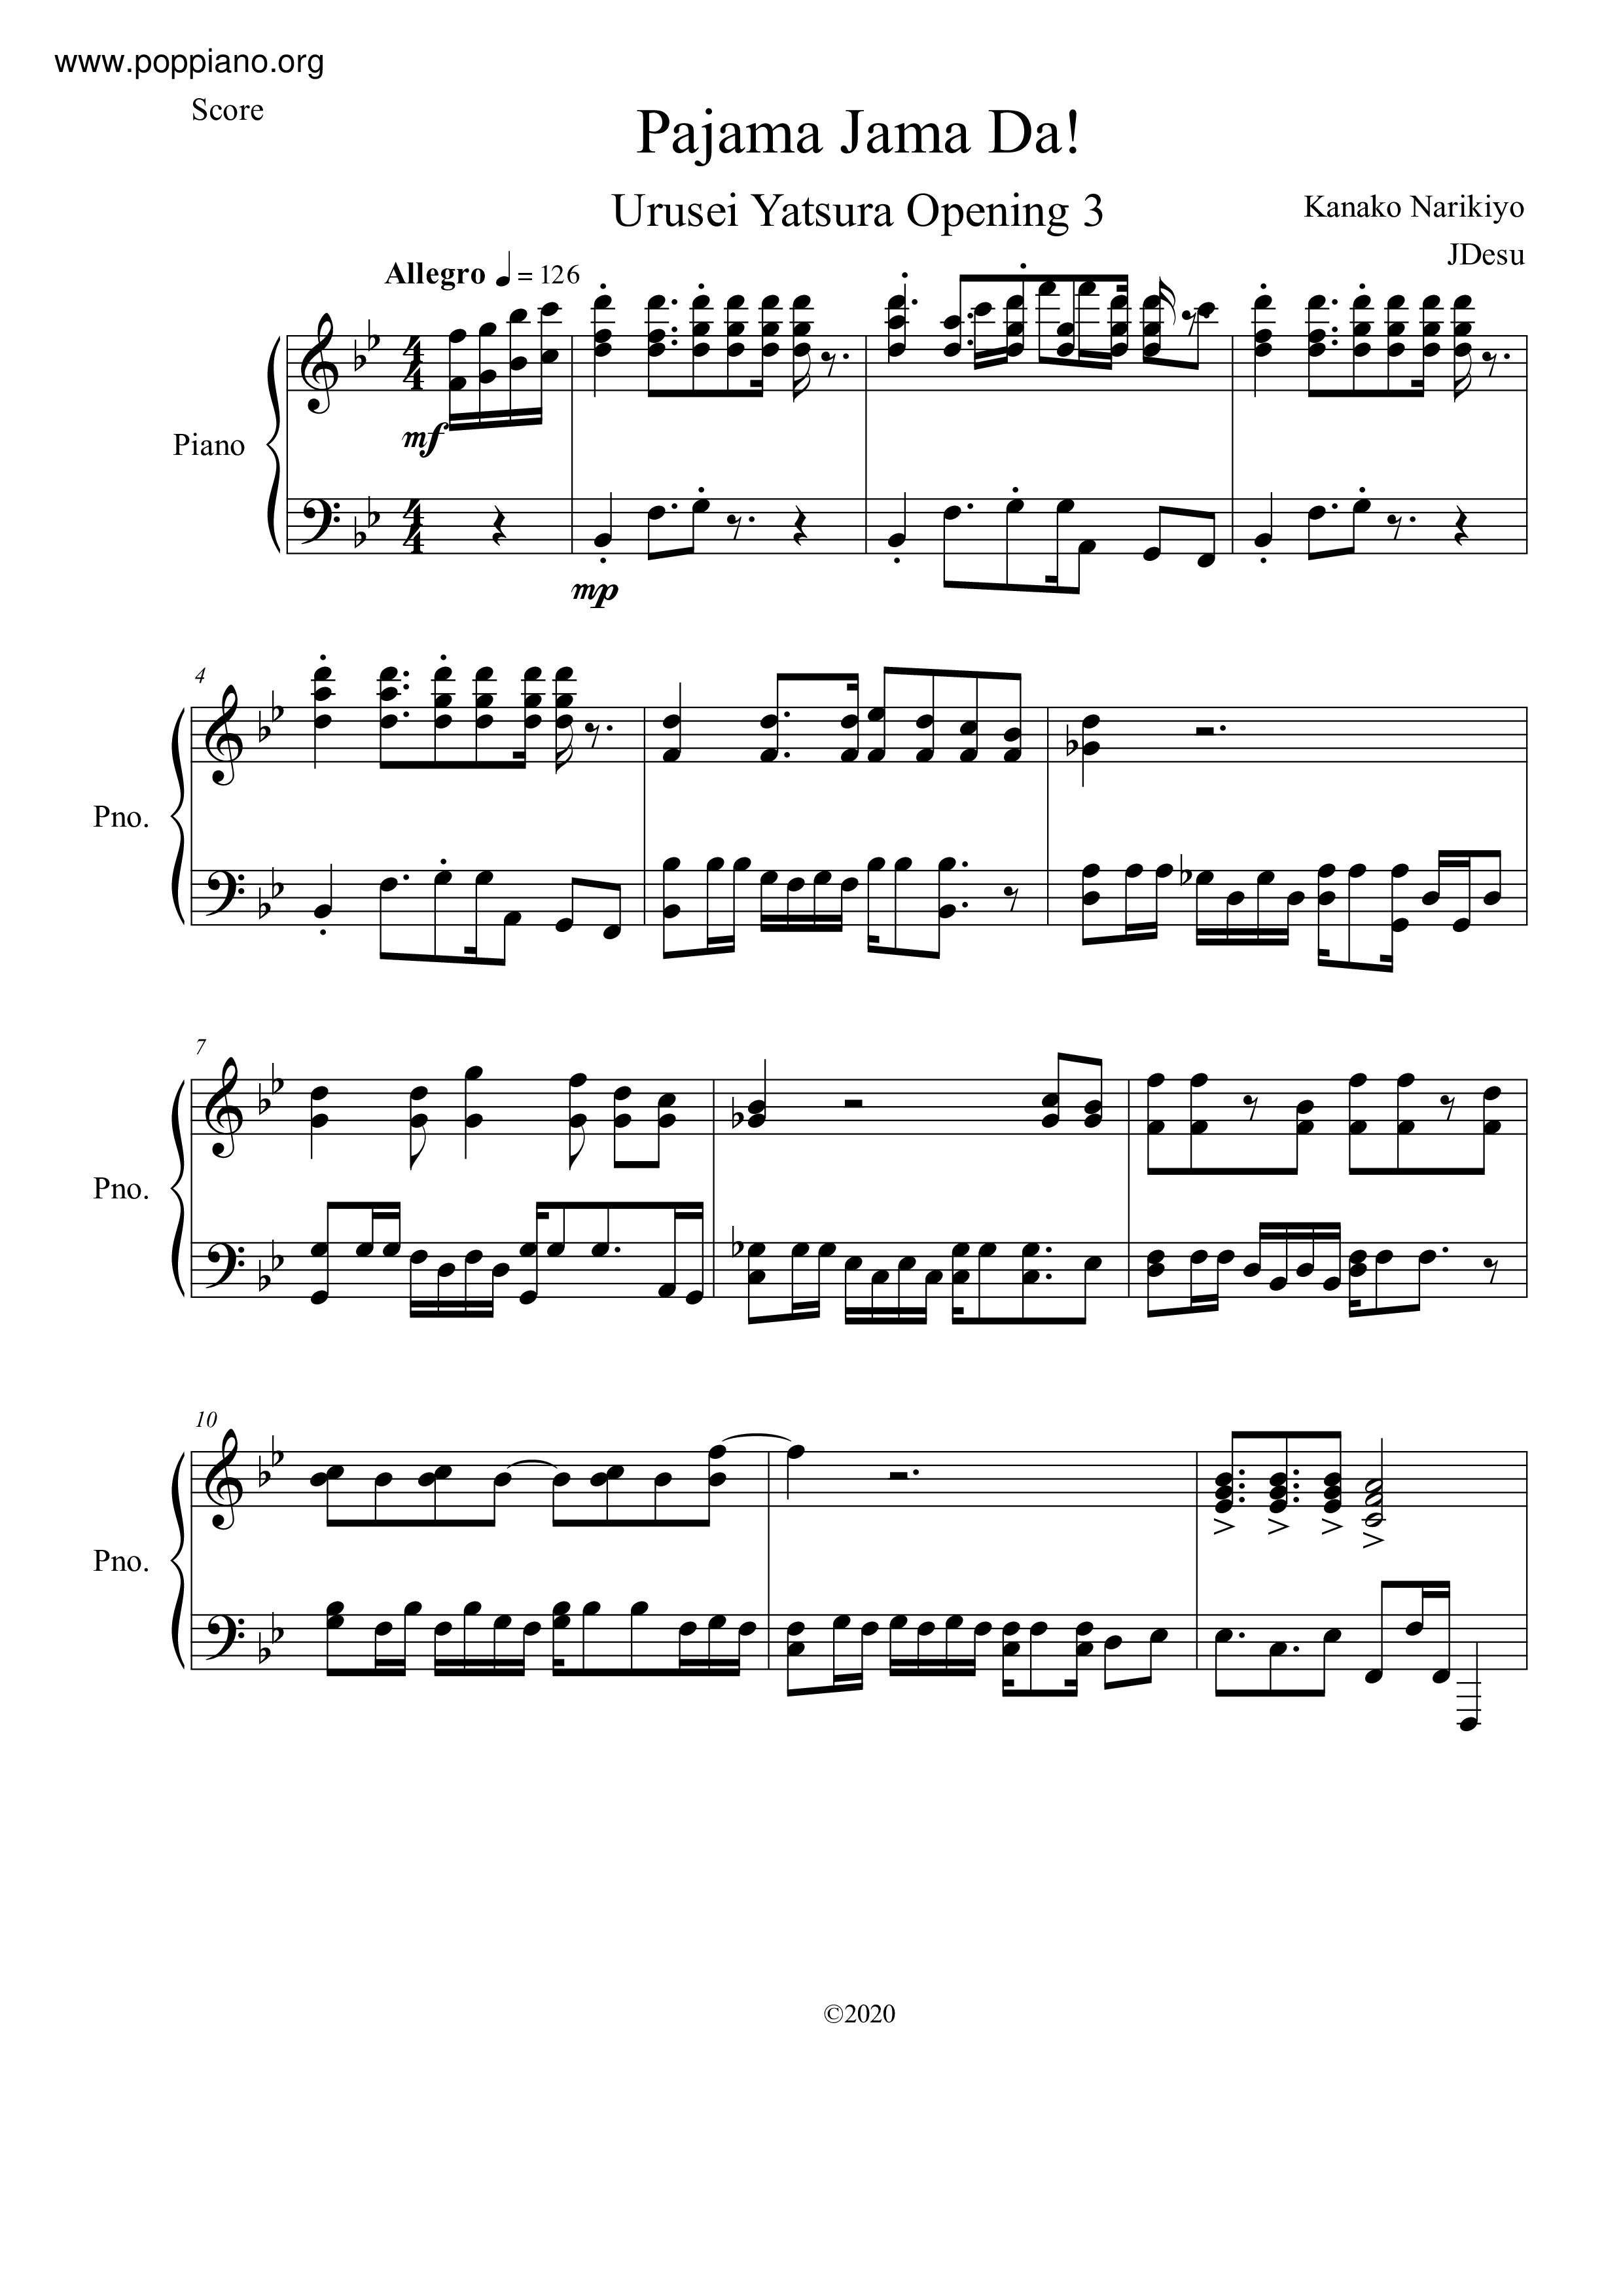 ☆うる星やつら - Pajama Jama Da! ピアノ譜pdf- 香港ポップピアノ協会 